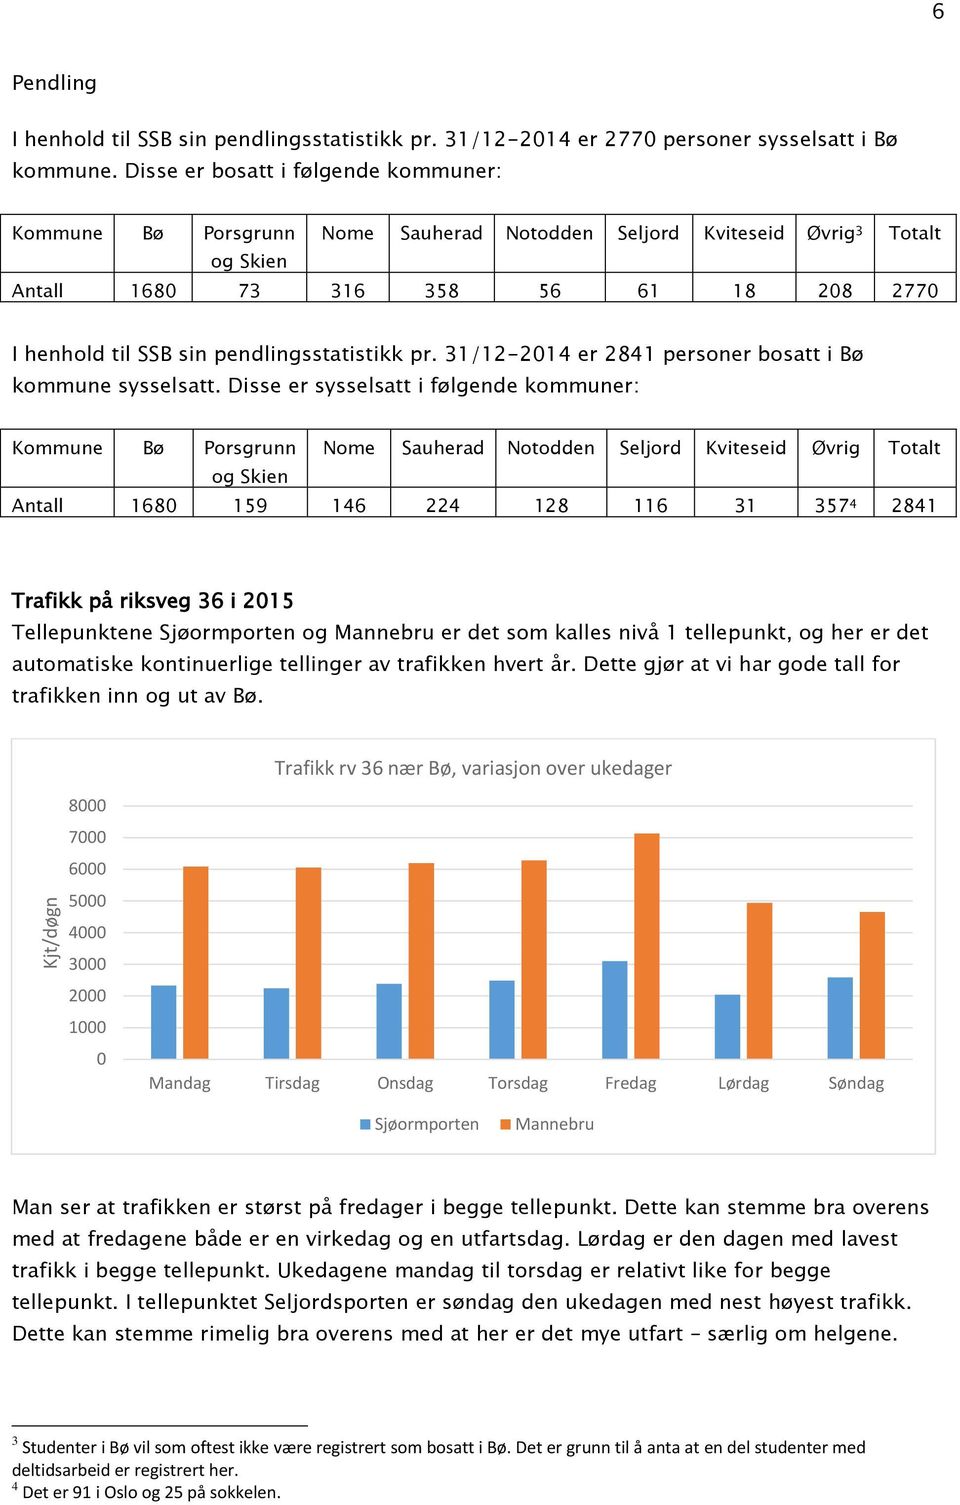 pendlingsstatistikk pr. 31/12-2014 er 2841 personer bosatt i Bø kommune sysselsatt.